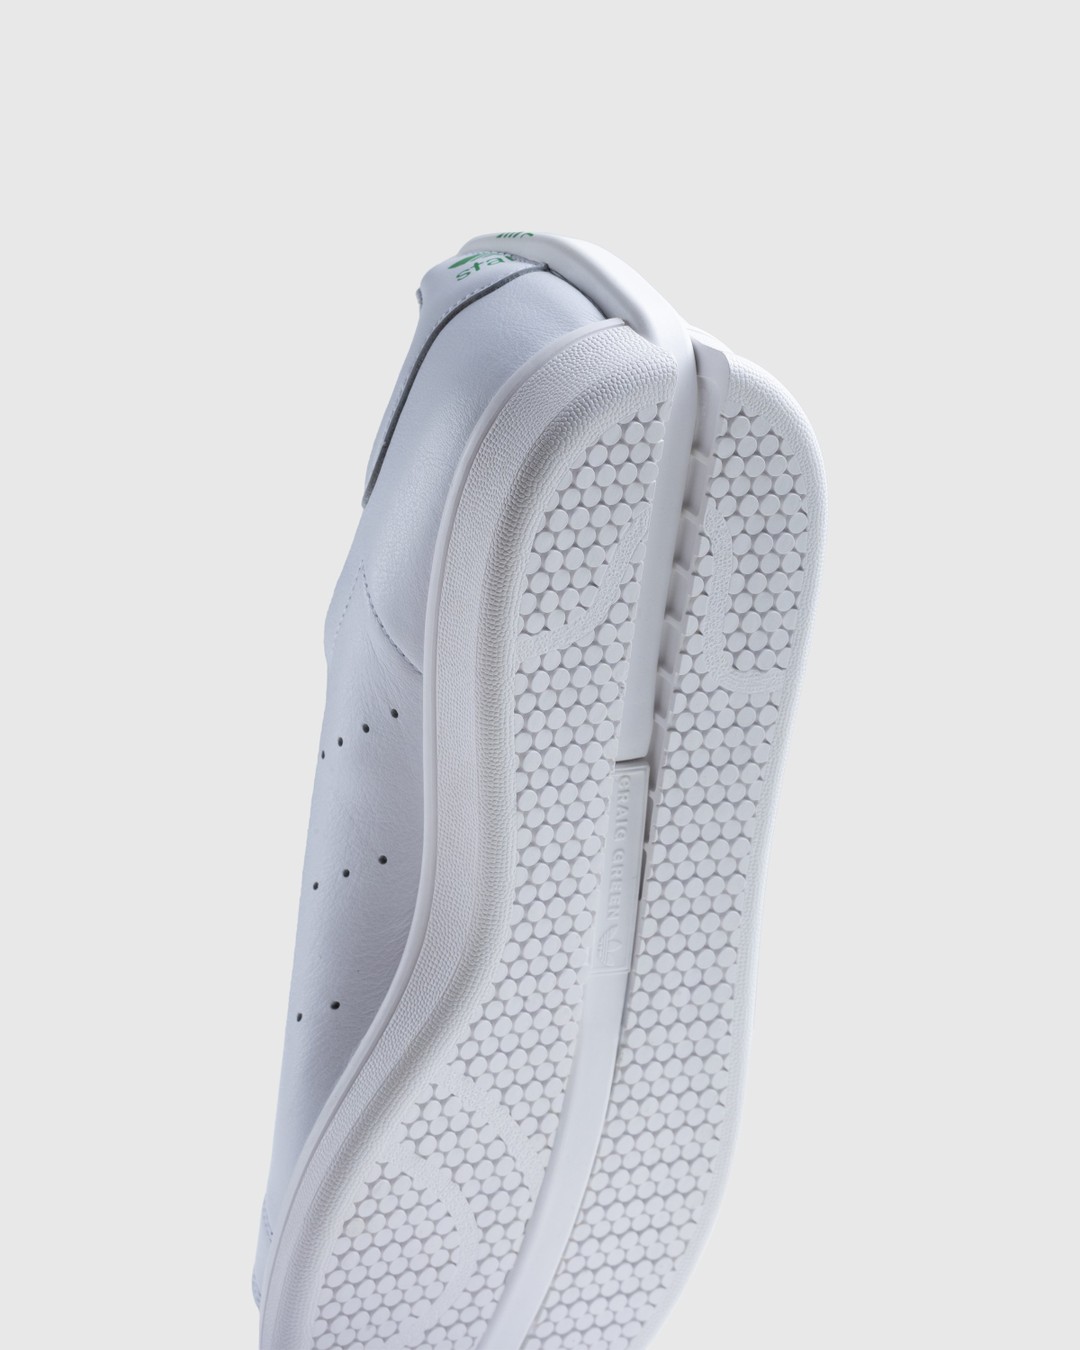 Adidas – CG Split Stan Smith White/Black - Sneakers - White - Image 6